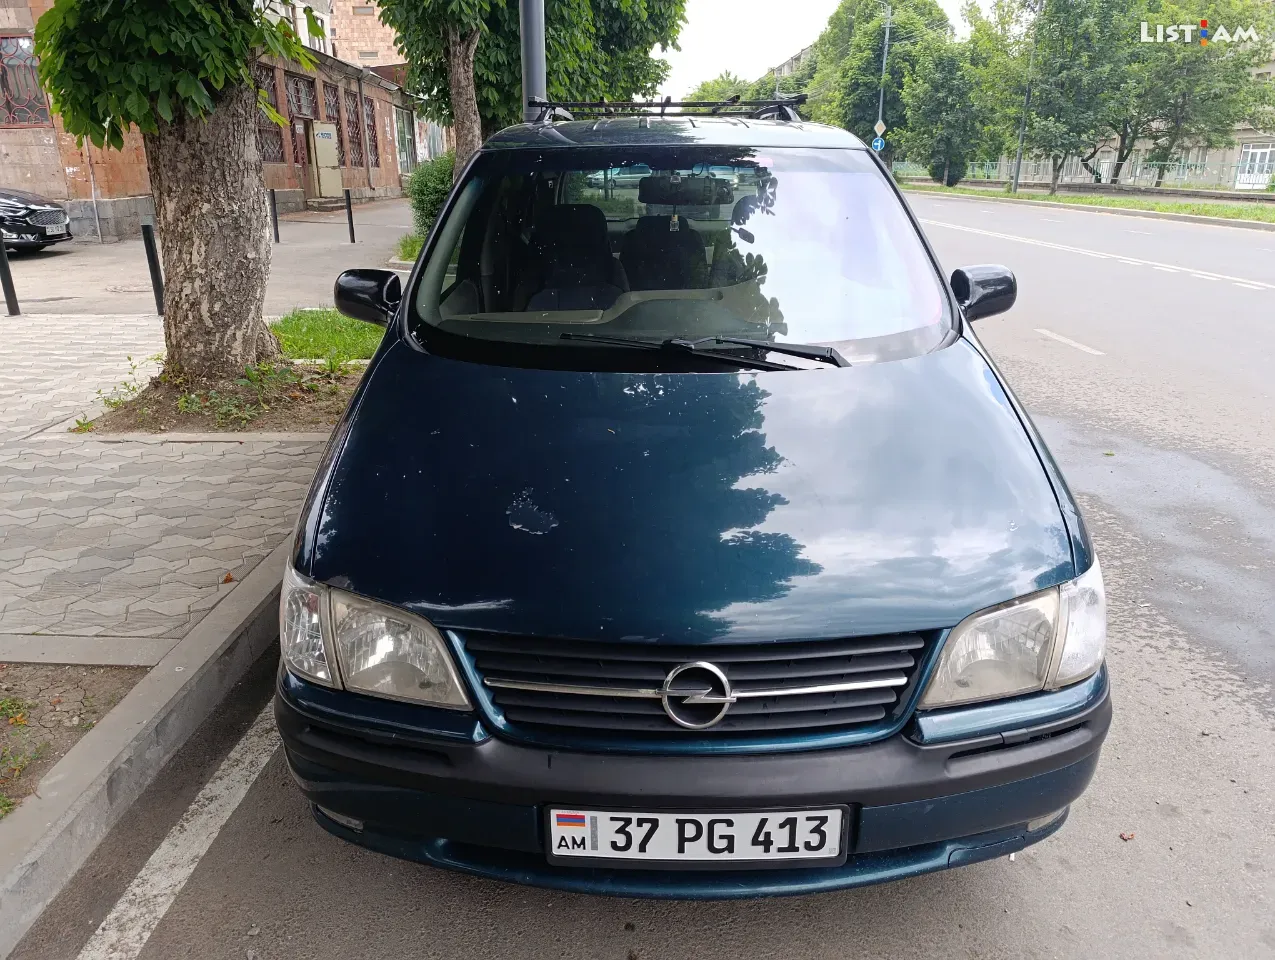 Opel Sintra, 2.2 լ, 1997 թ., գազ - Ավտոմեքենաներ - List.am